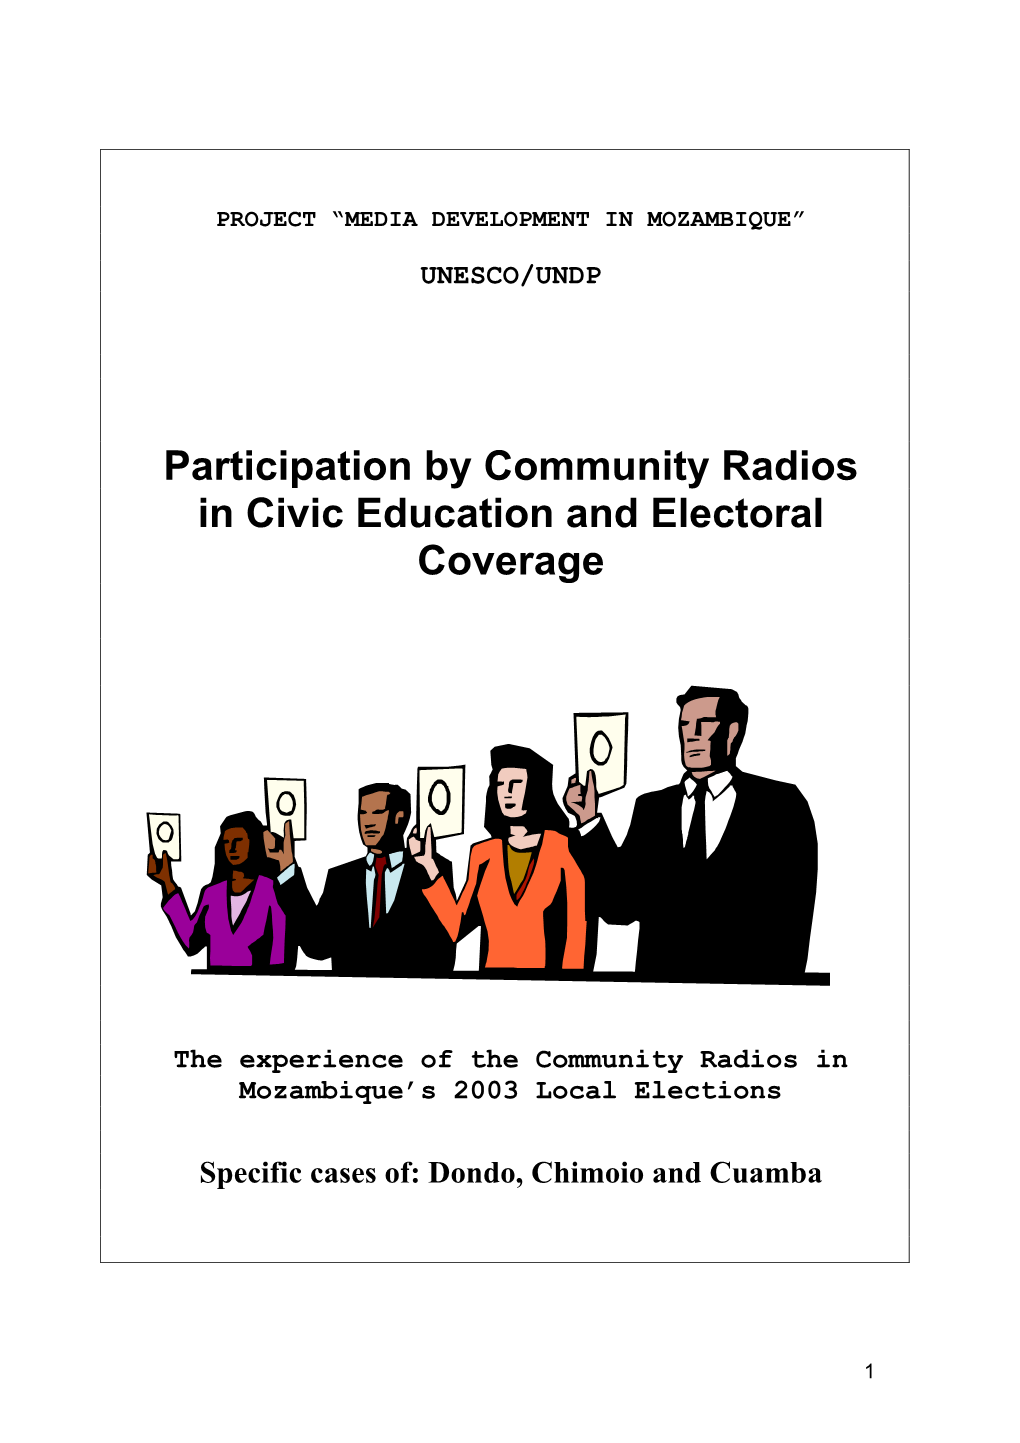 Electoral Coverage in Community Radios